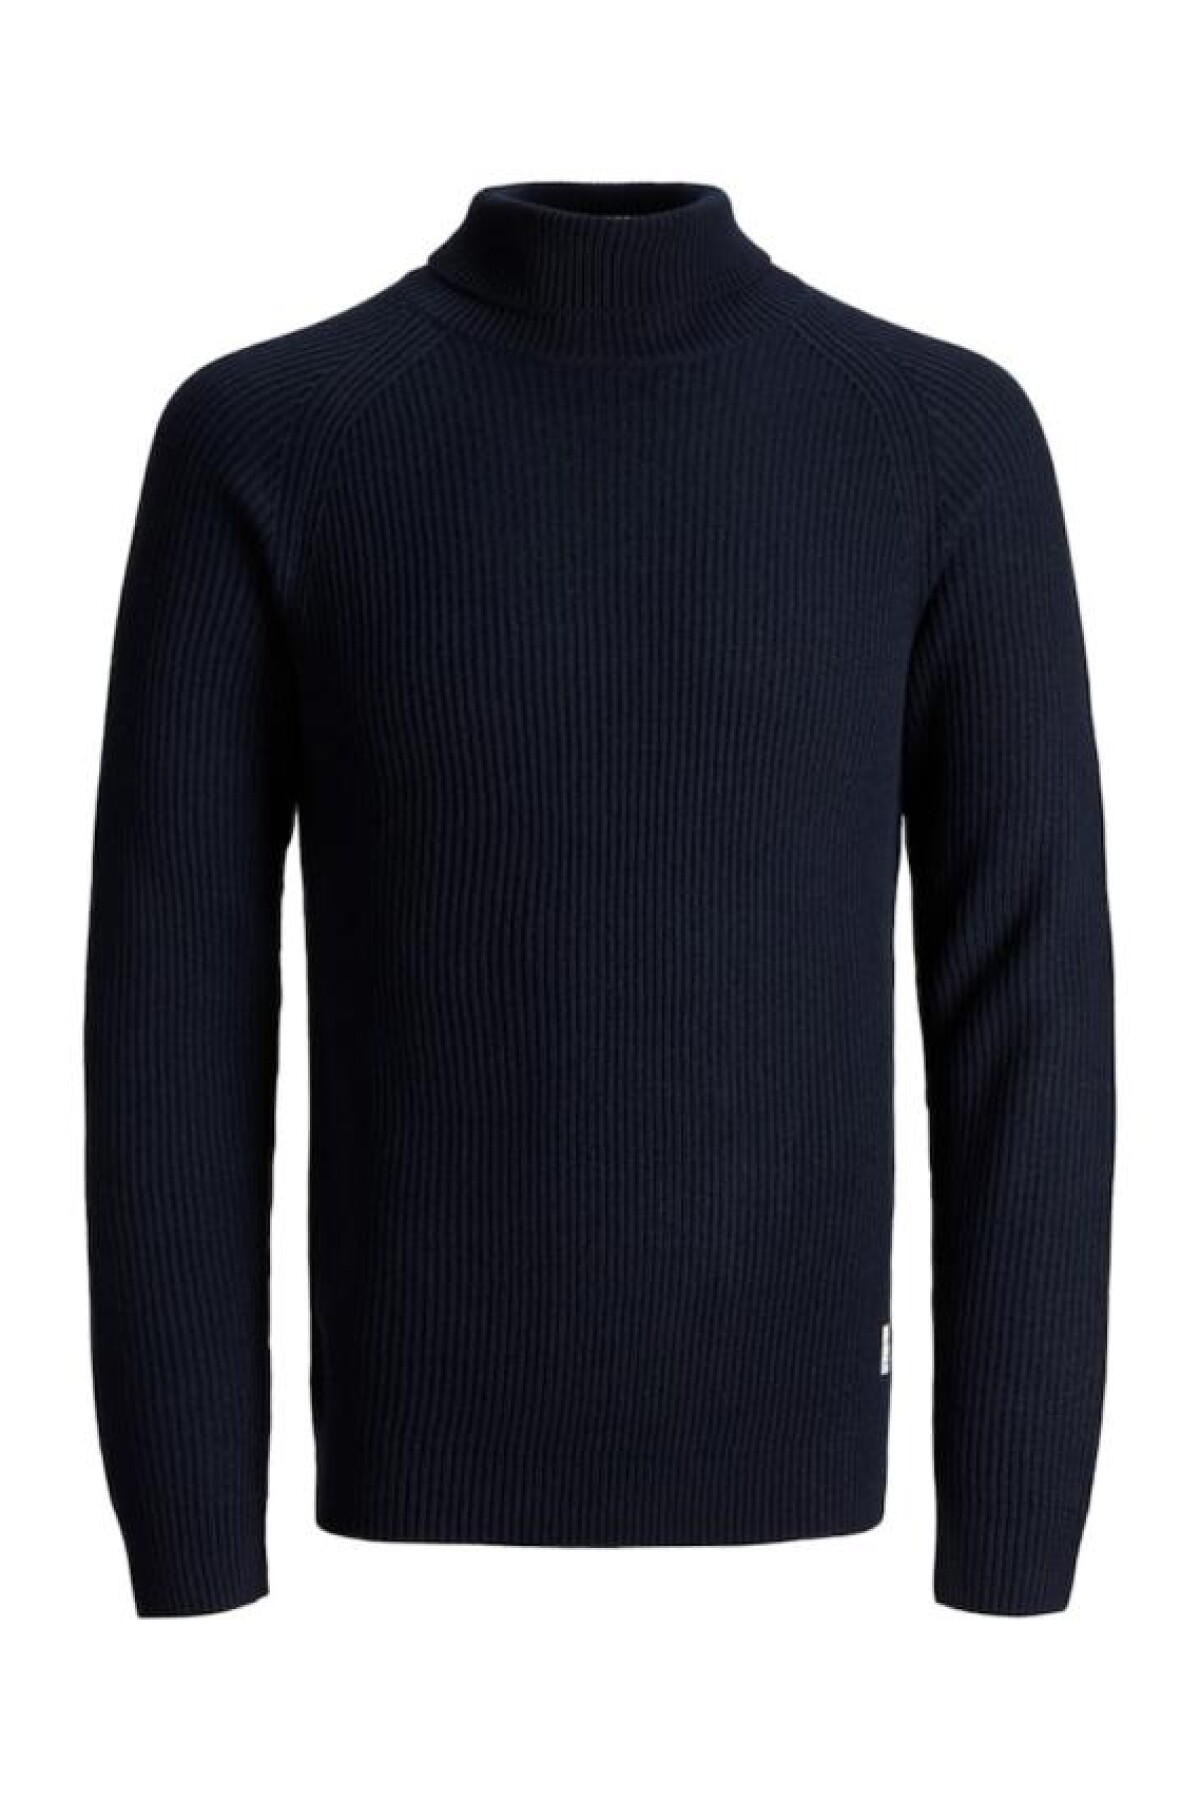 Sweater Pannel Cuello Subido Navy Blazer